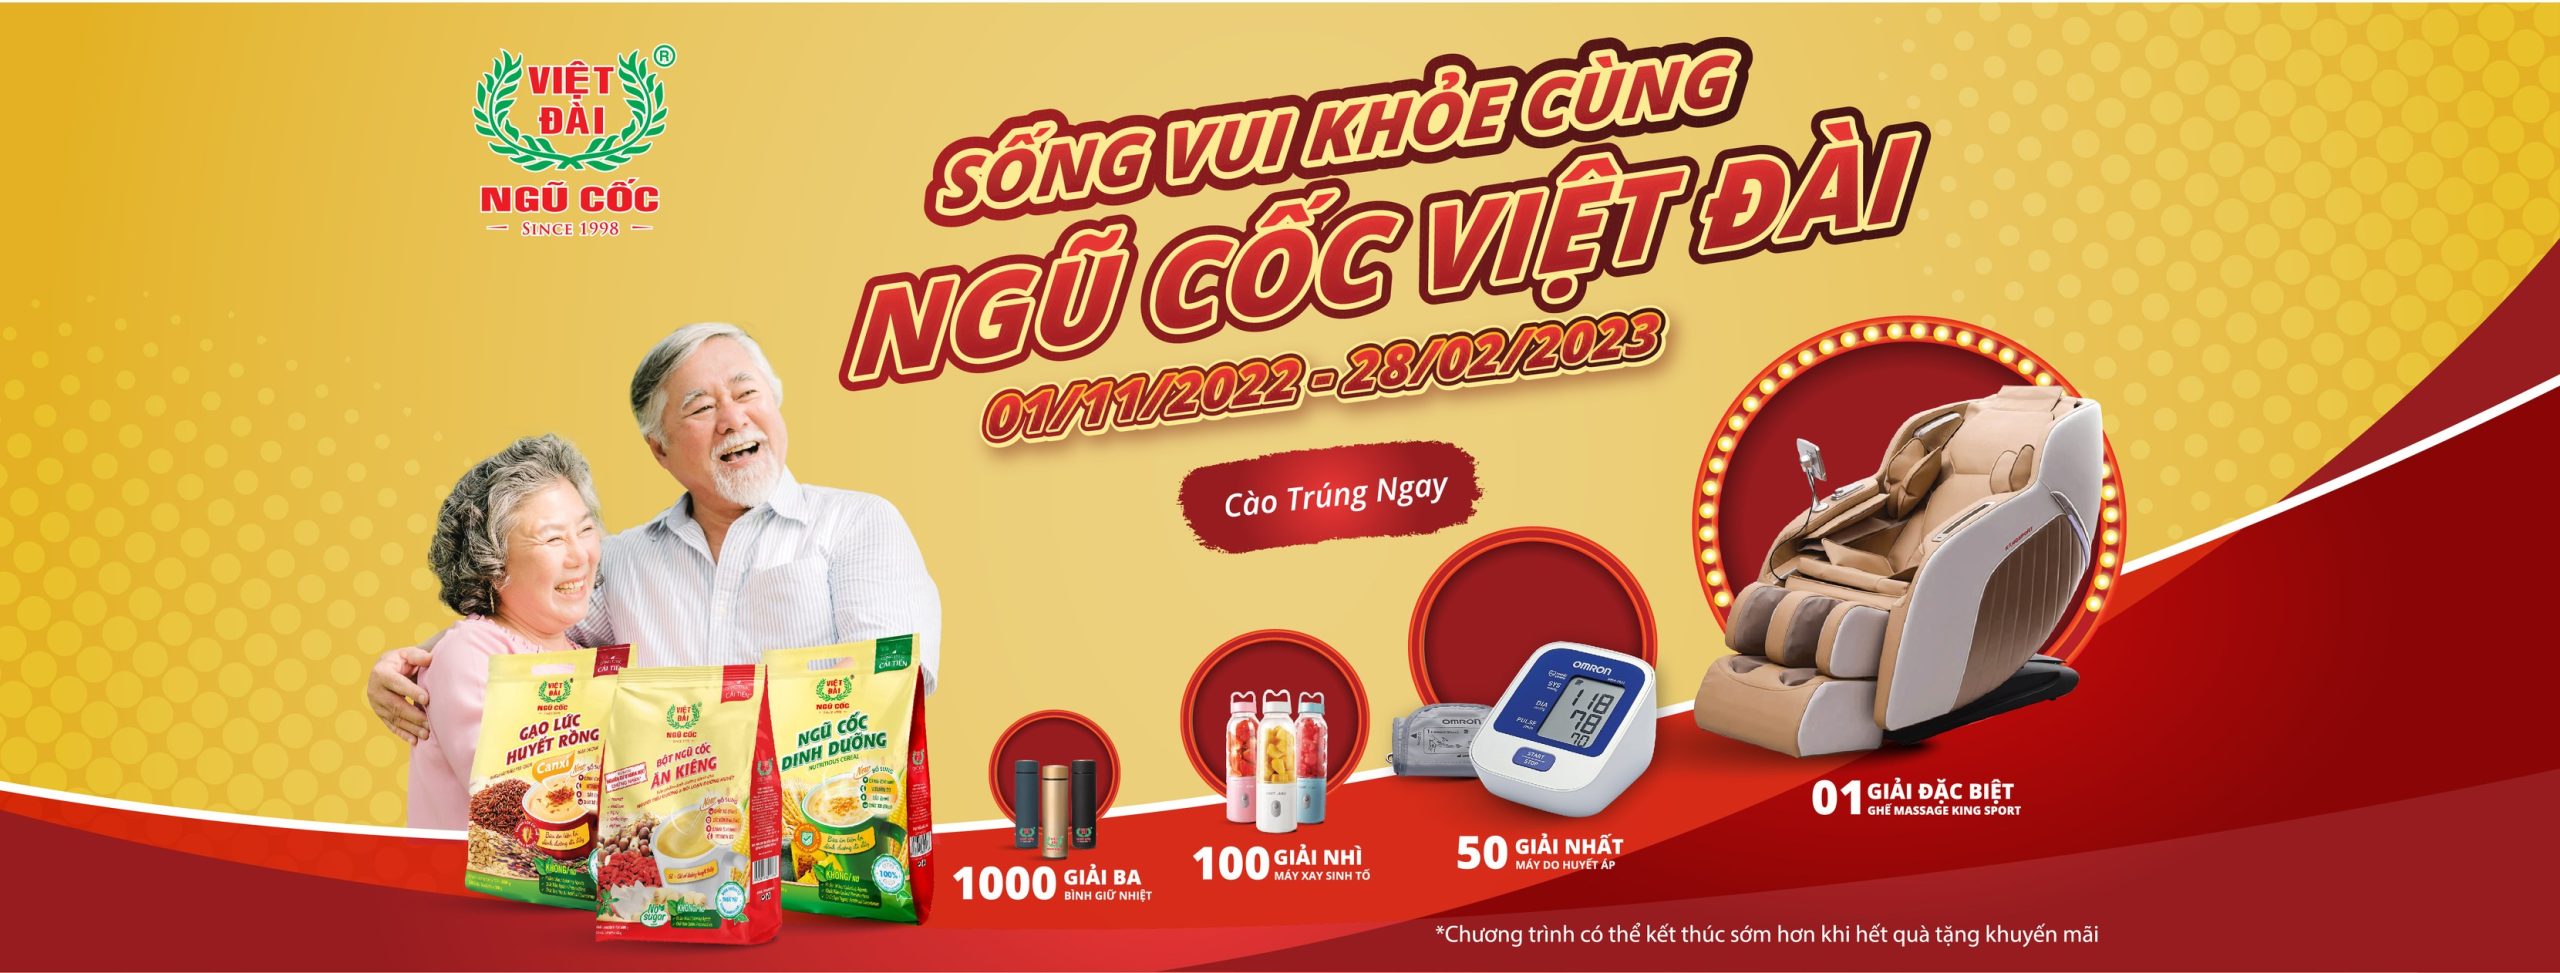 banner promotion Việt Đài